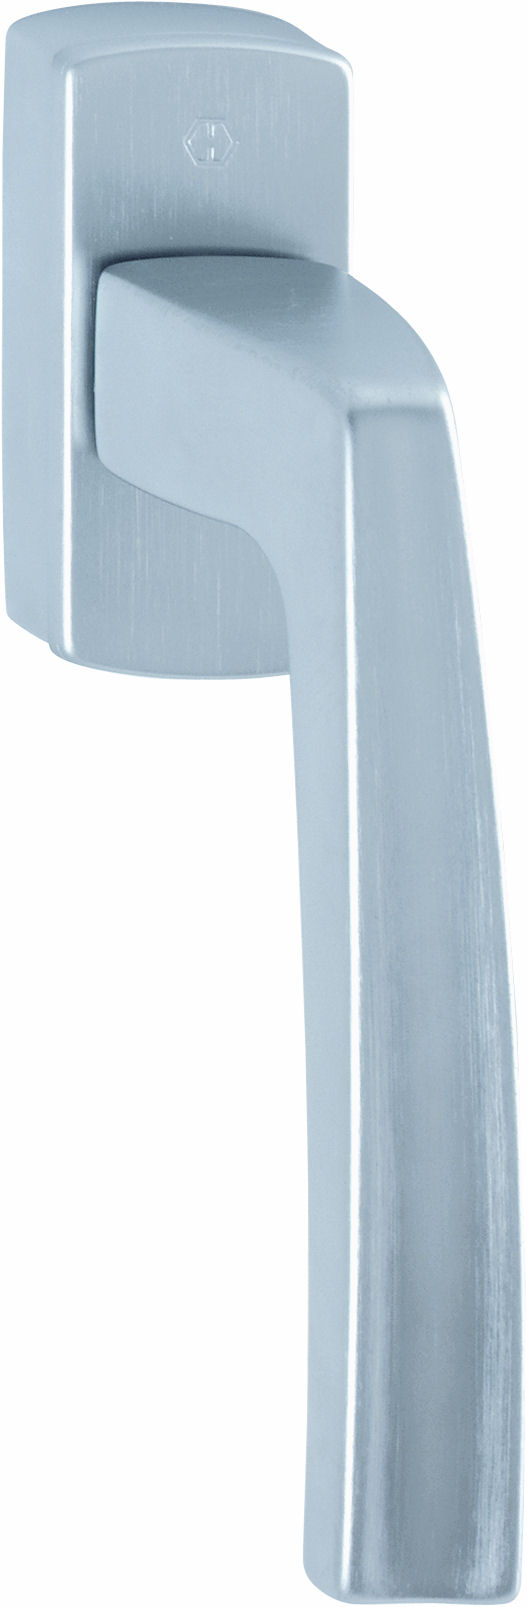 Martellina dk HOPPE modello ACAPULCO per serramento con rosetta con quadro variabile in ottone cromo satinato